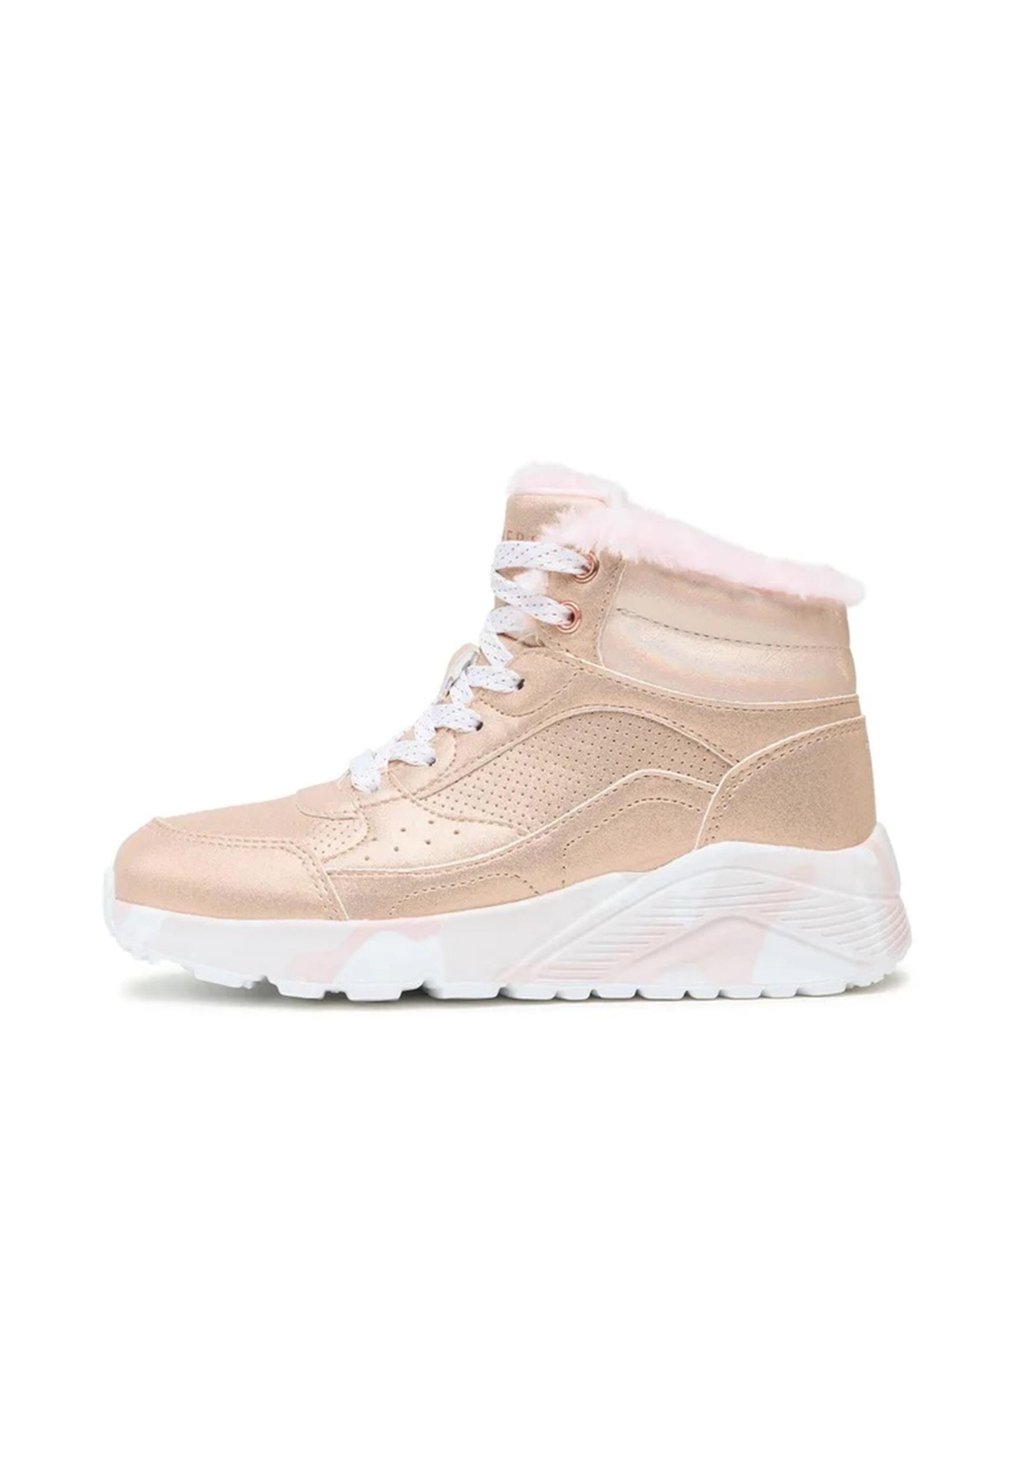 Снегоступы/зимние ботинки Skechers, цвет gdpk gold pink